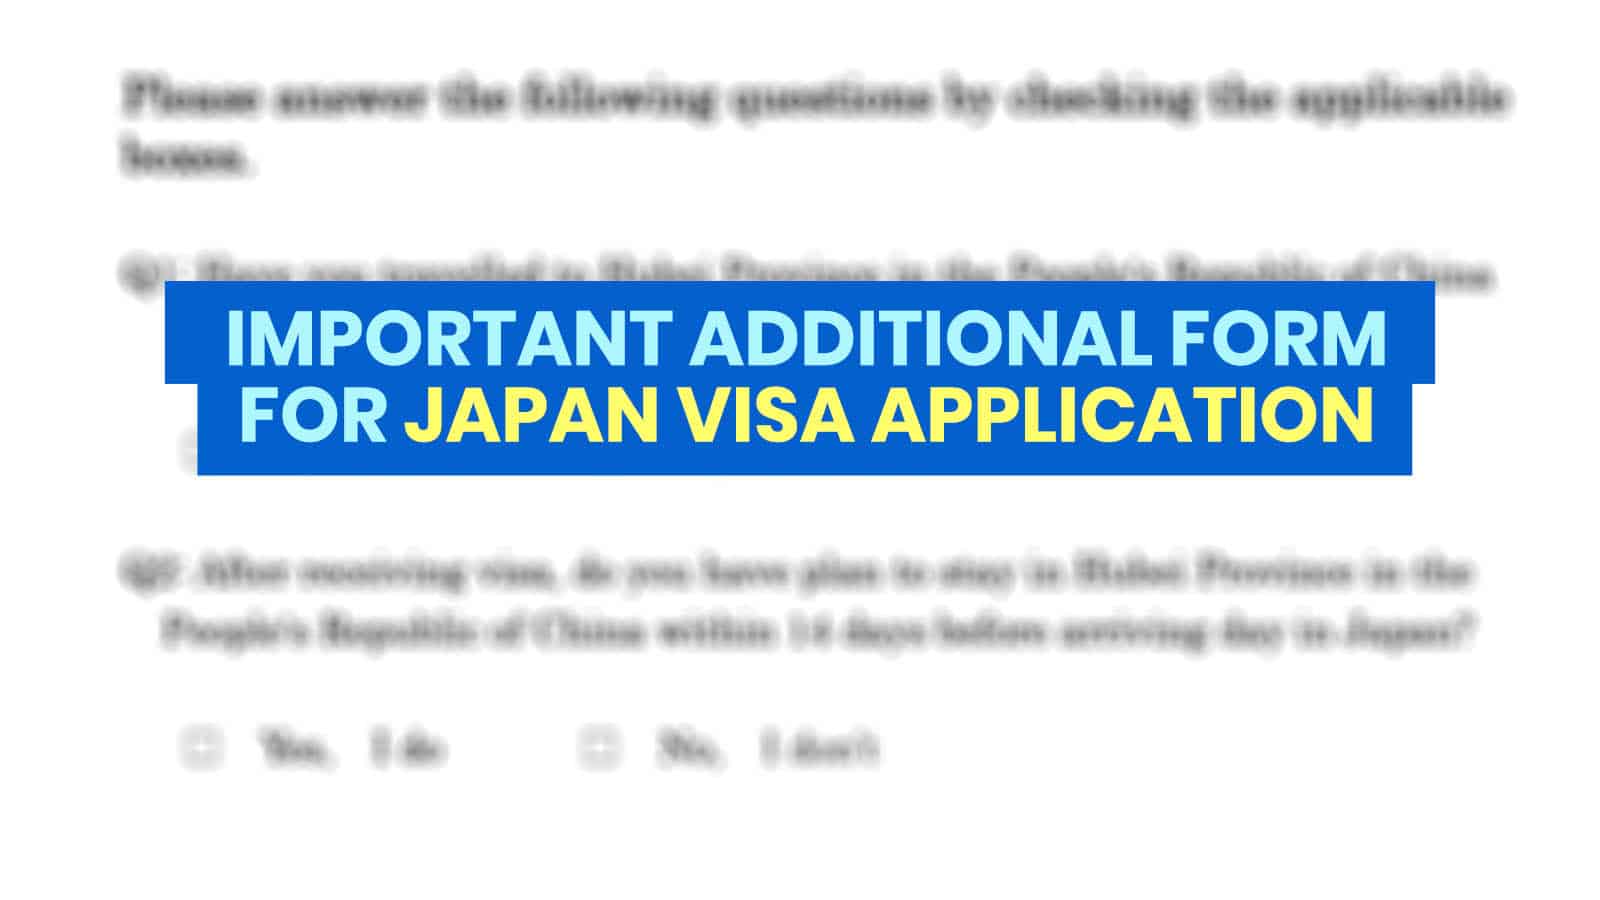 重要的日本签证更新:需要提交额外的新型冠状病毒/COVID-19表格